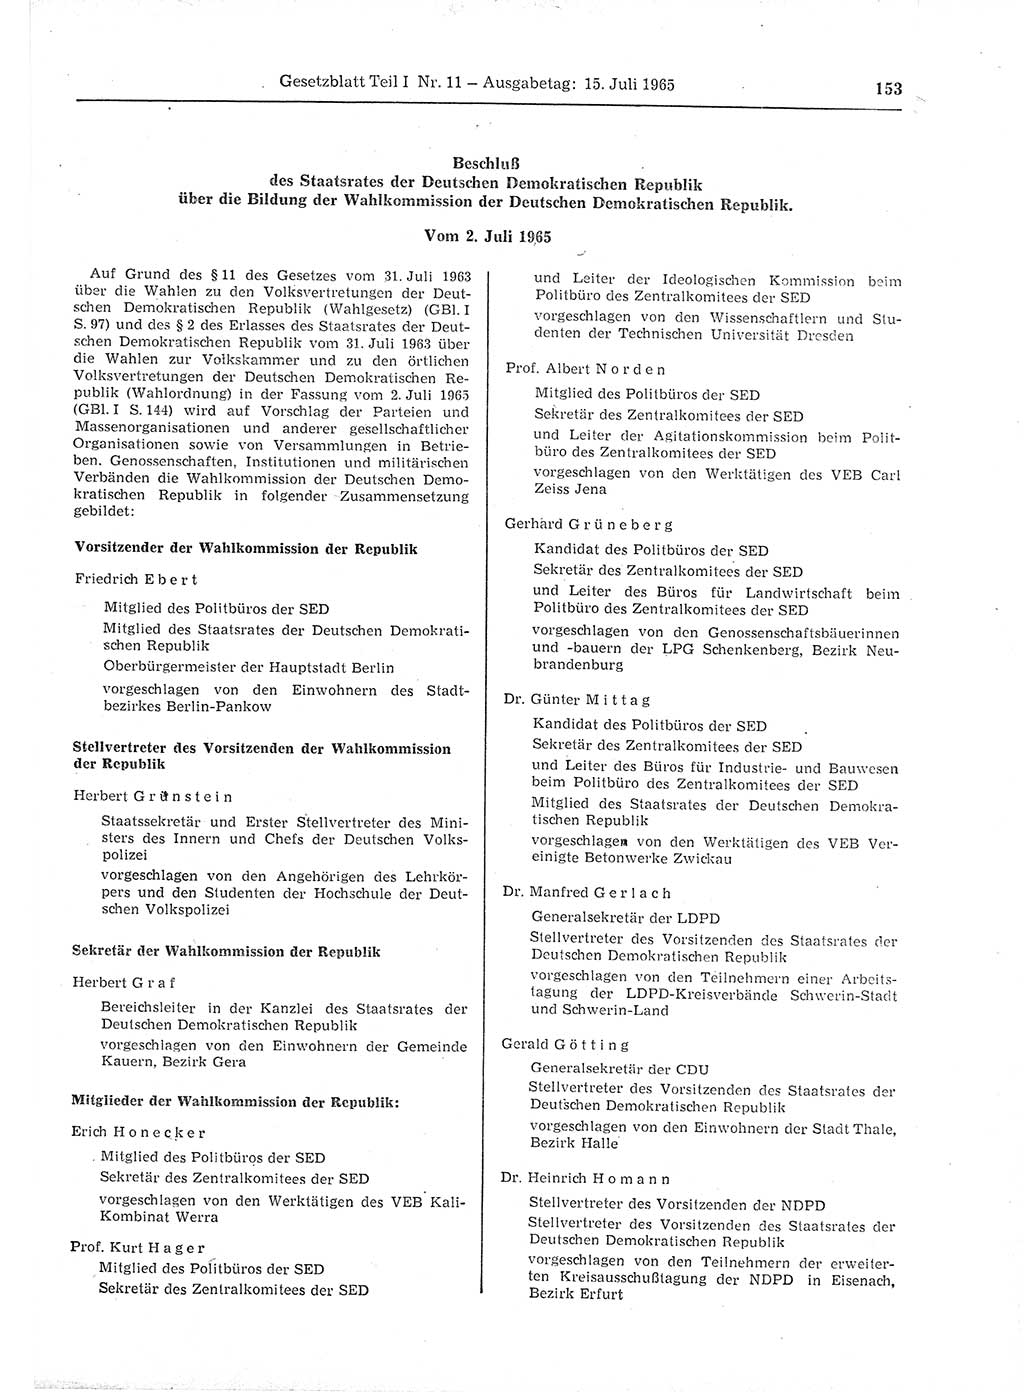 Gesetzblatt (GBl.) der Deutschen Demokratischen Republik (DDR) Teil Ⅰ 1965, Seite 153 (GBl. DDR Ⅰ 1965, S. 153)